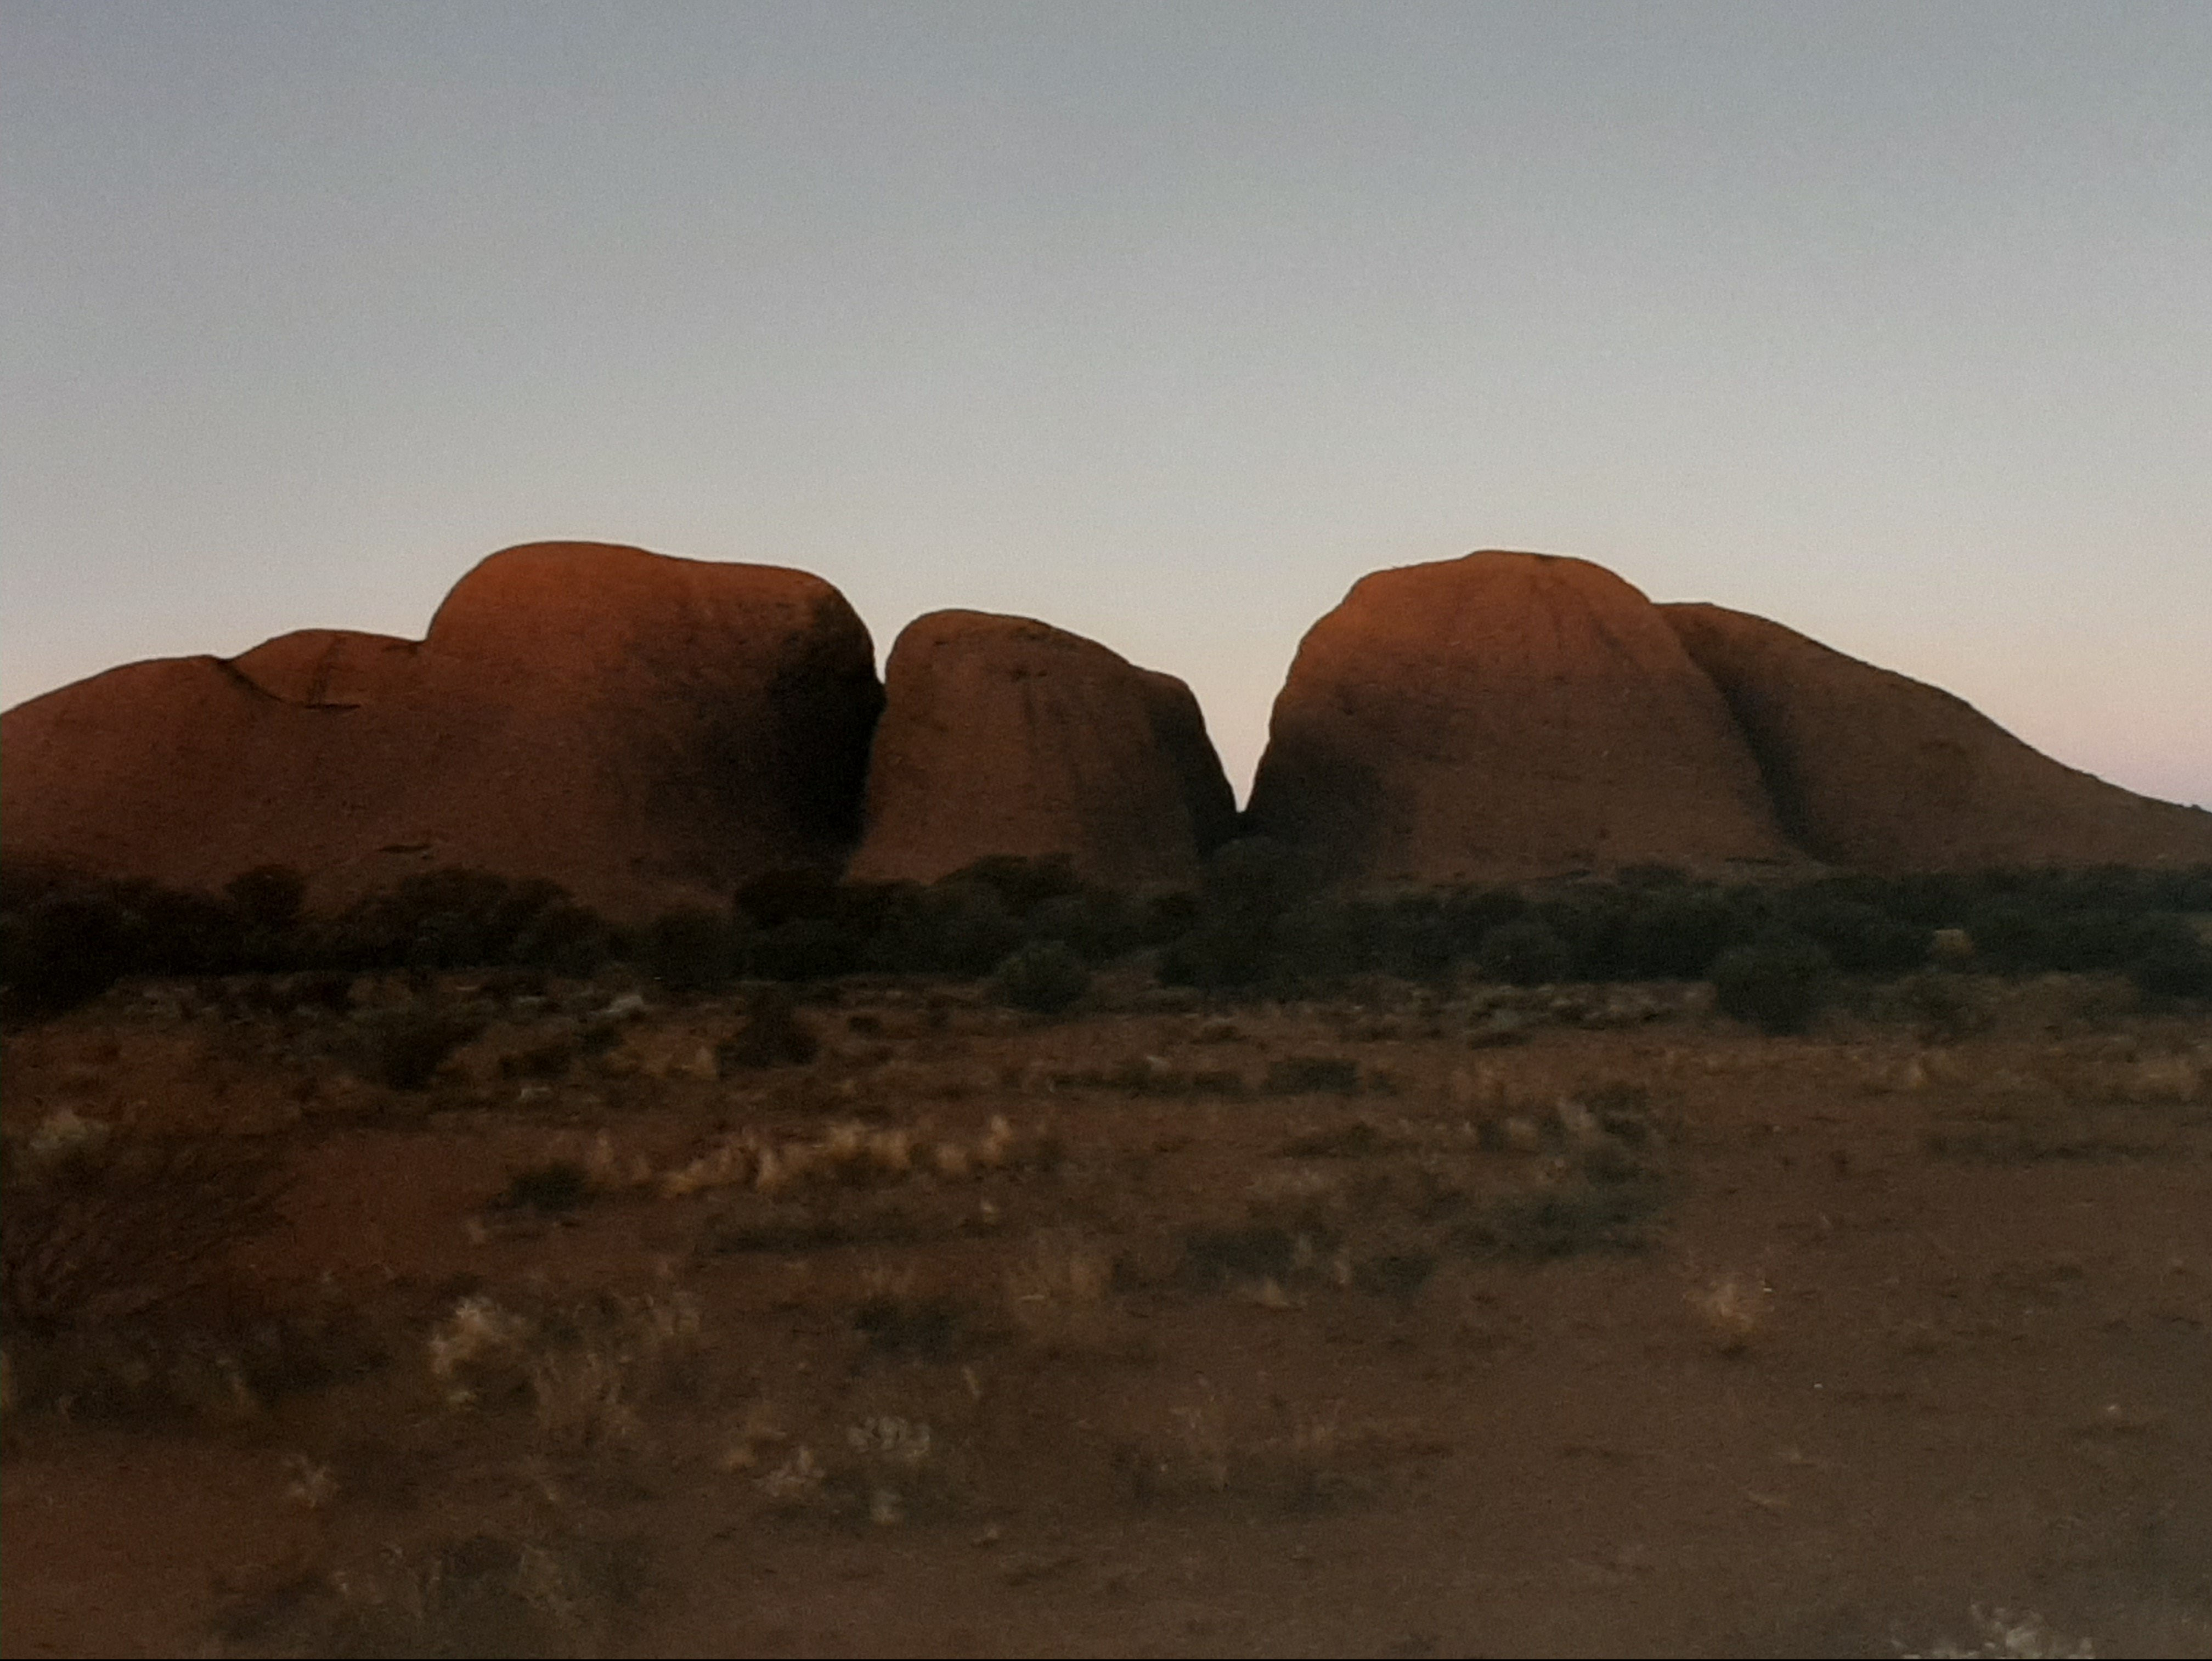 The Olgas - Australia - Outback